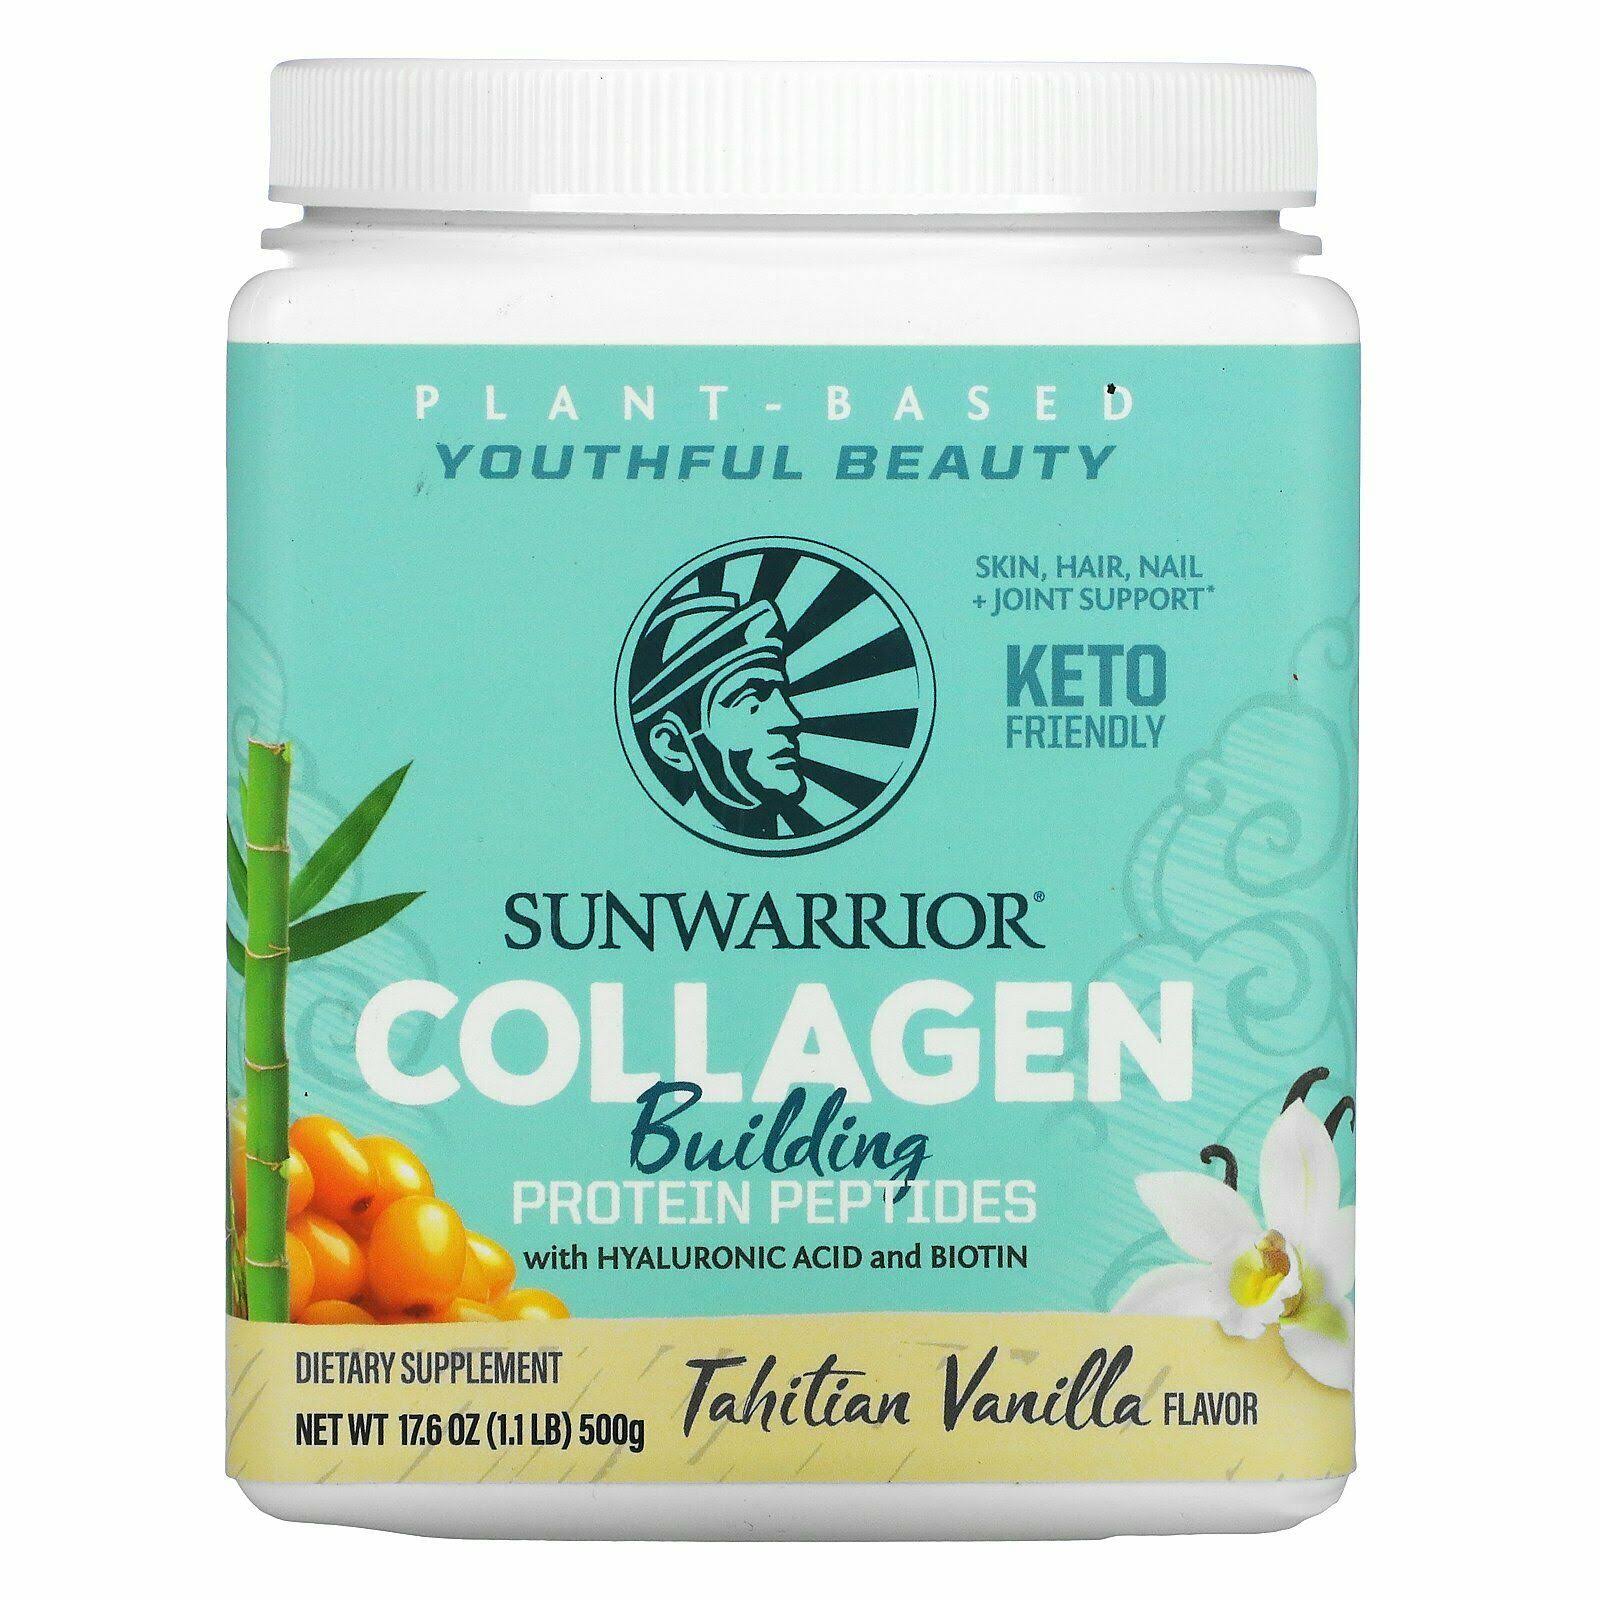 Sunwarrior Collagen Building Protein Peptides Vanilla 500g